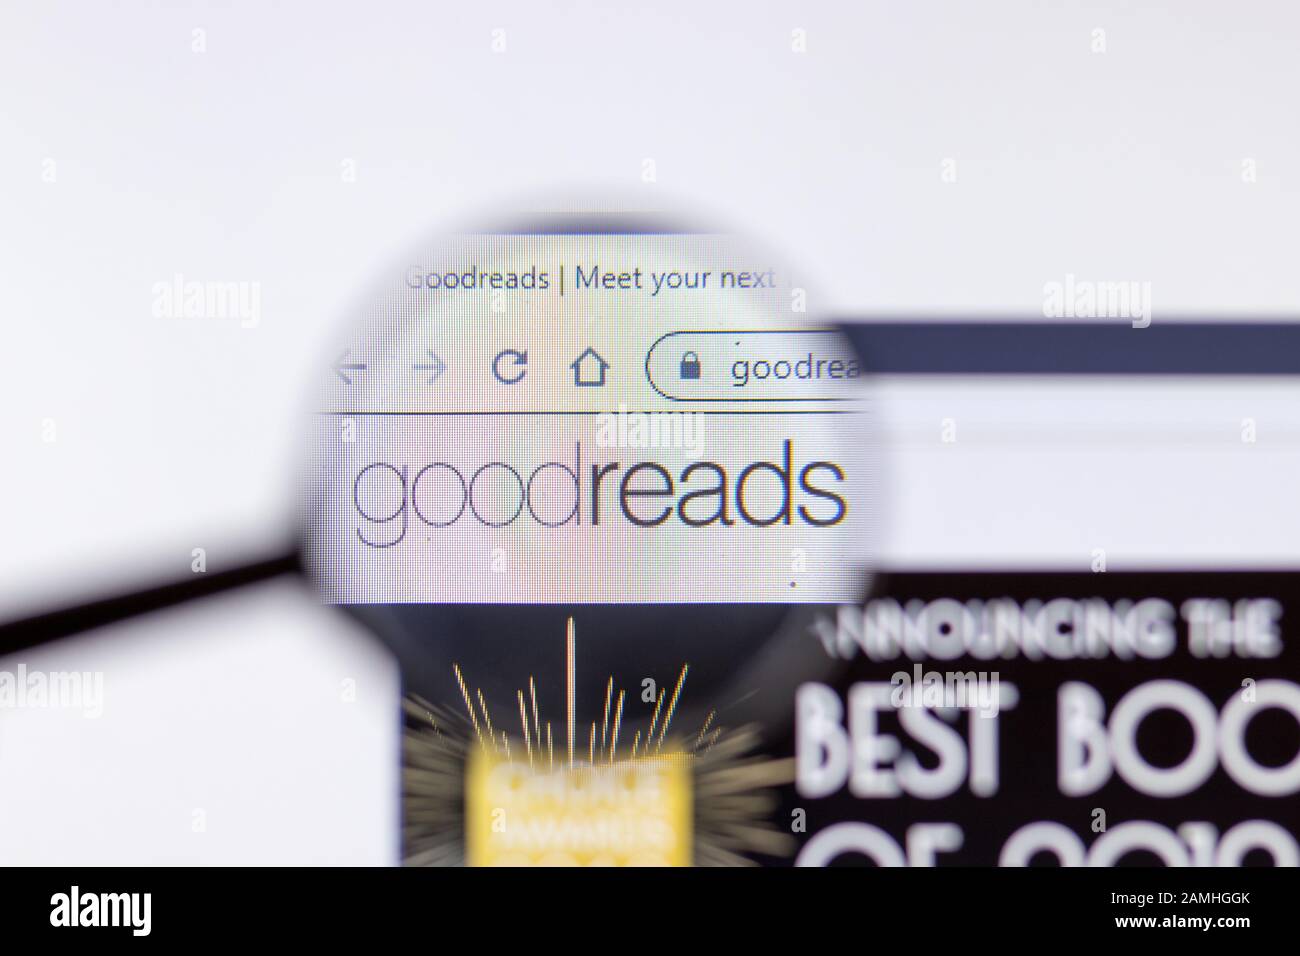 Saint-Pétersbourg, Russie - 10 janvier 2020: Goodreads site web sur l'affichage d'un ordinateur portable avec logo, éditorial illustratif Banque D'Images